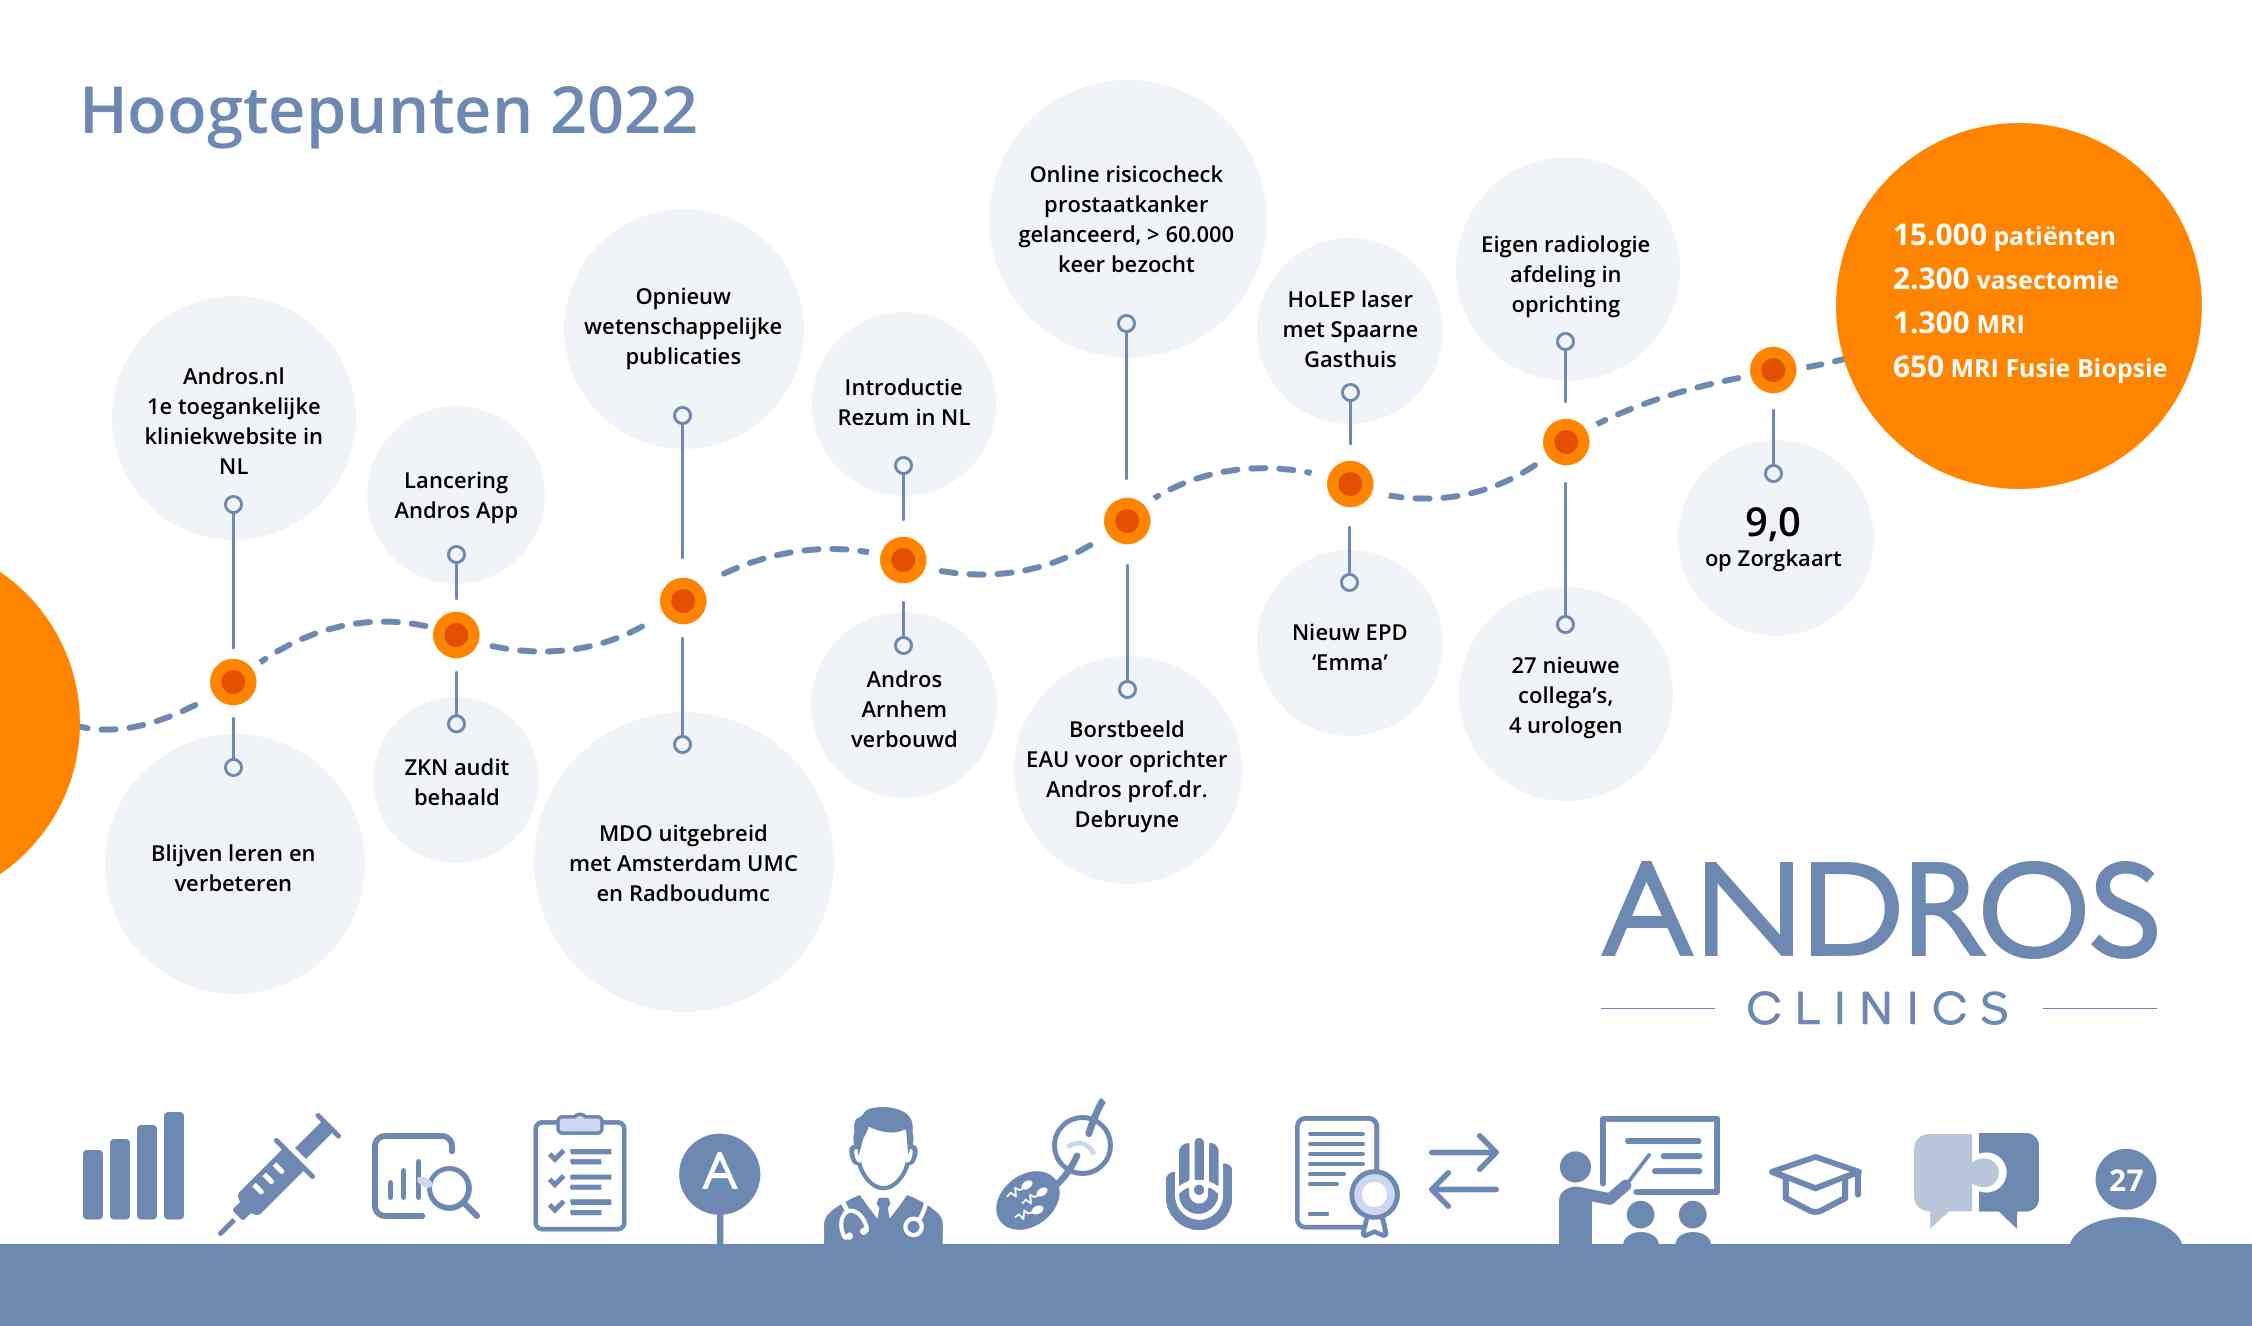 Hoogtepunten in 2022 in het jaaroverzicht van Andros Clinics